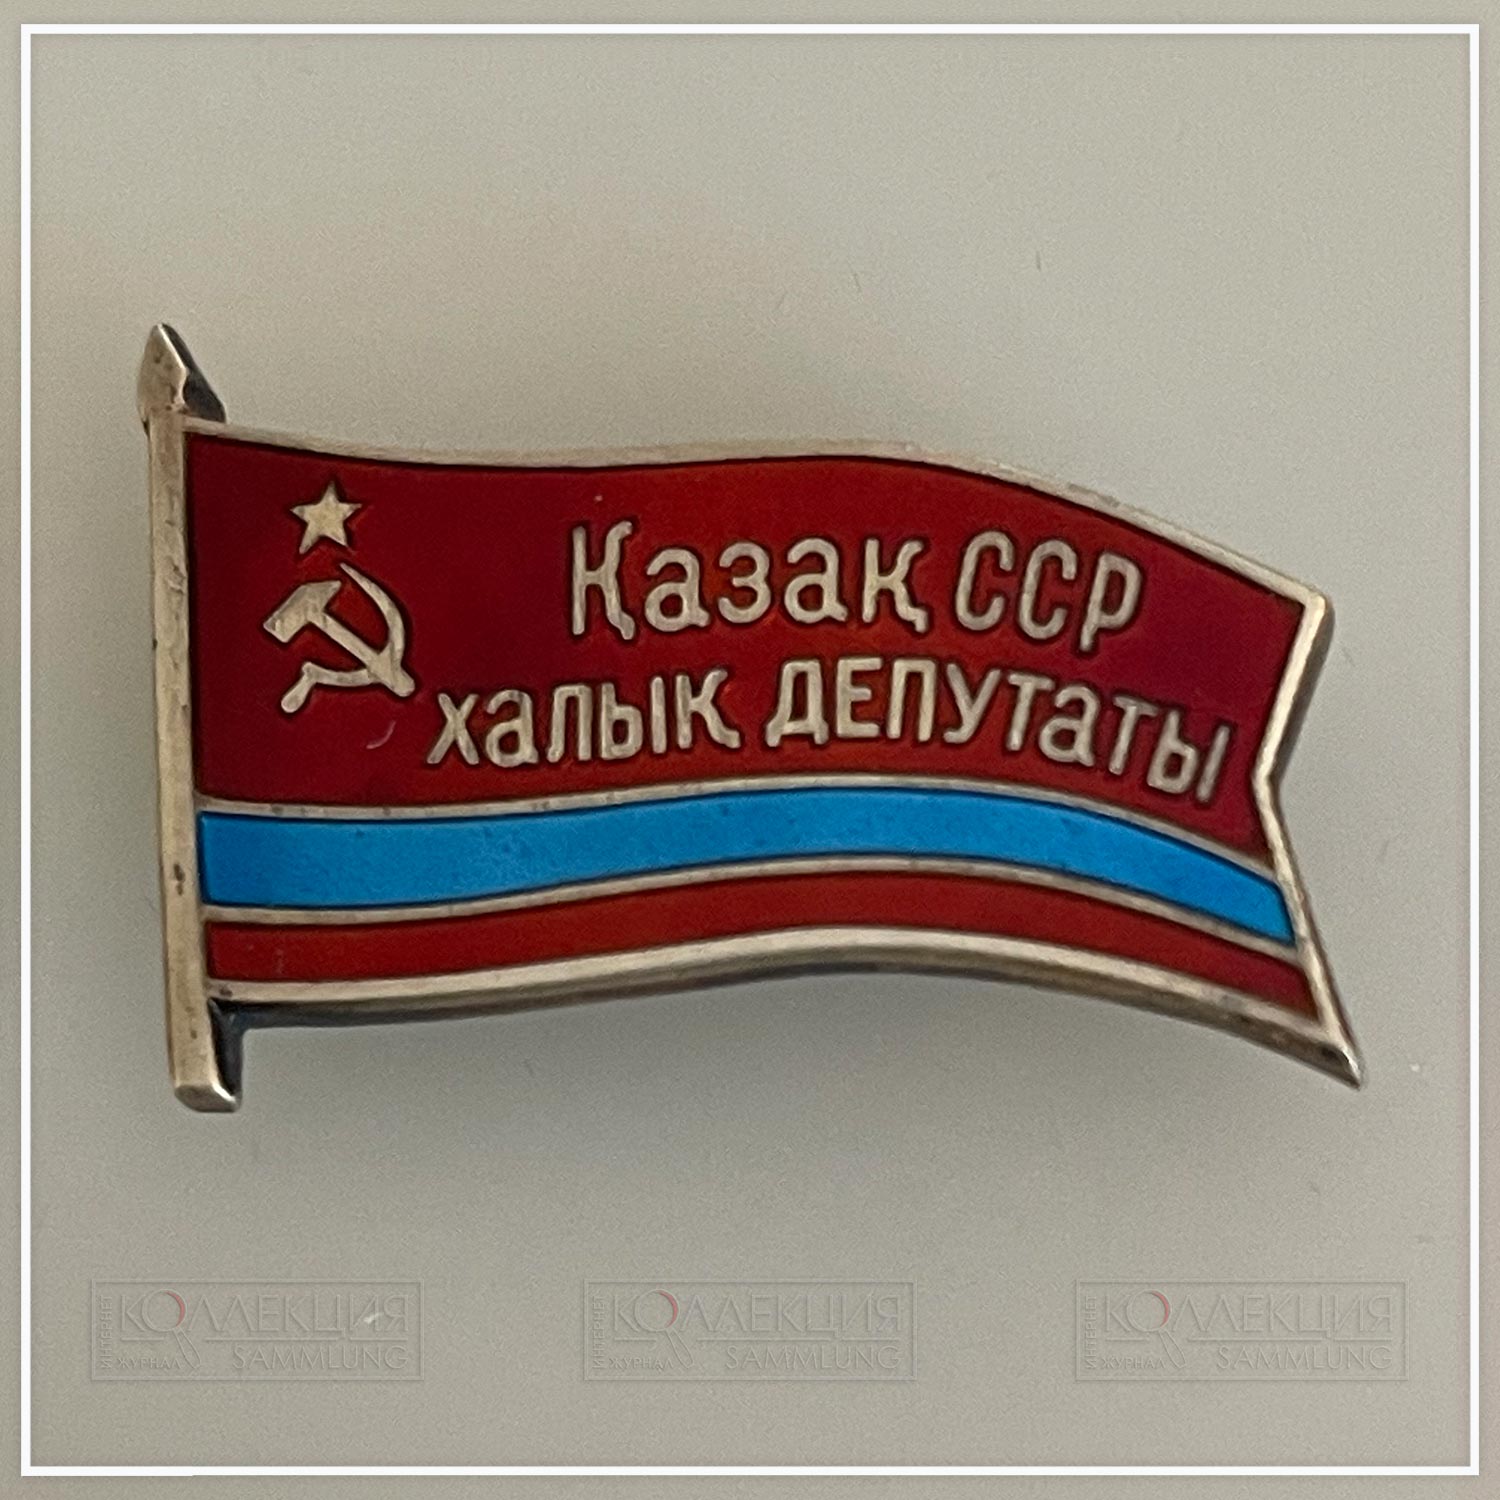 Народный депутат Казахской ССР